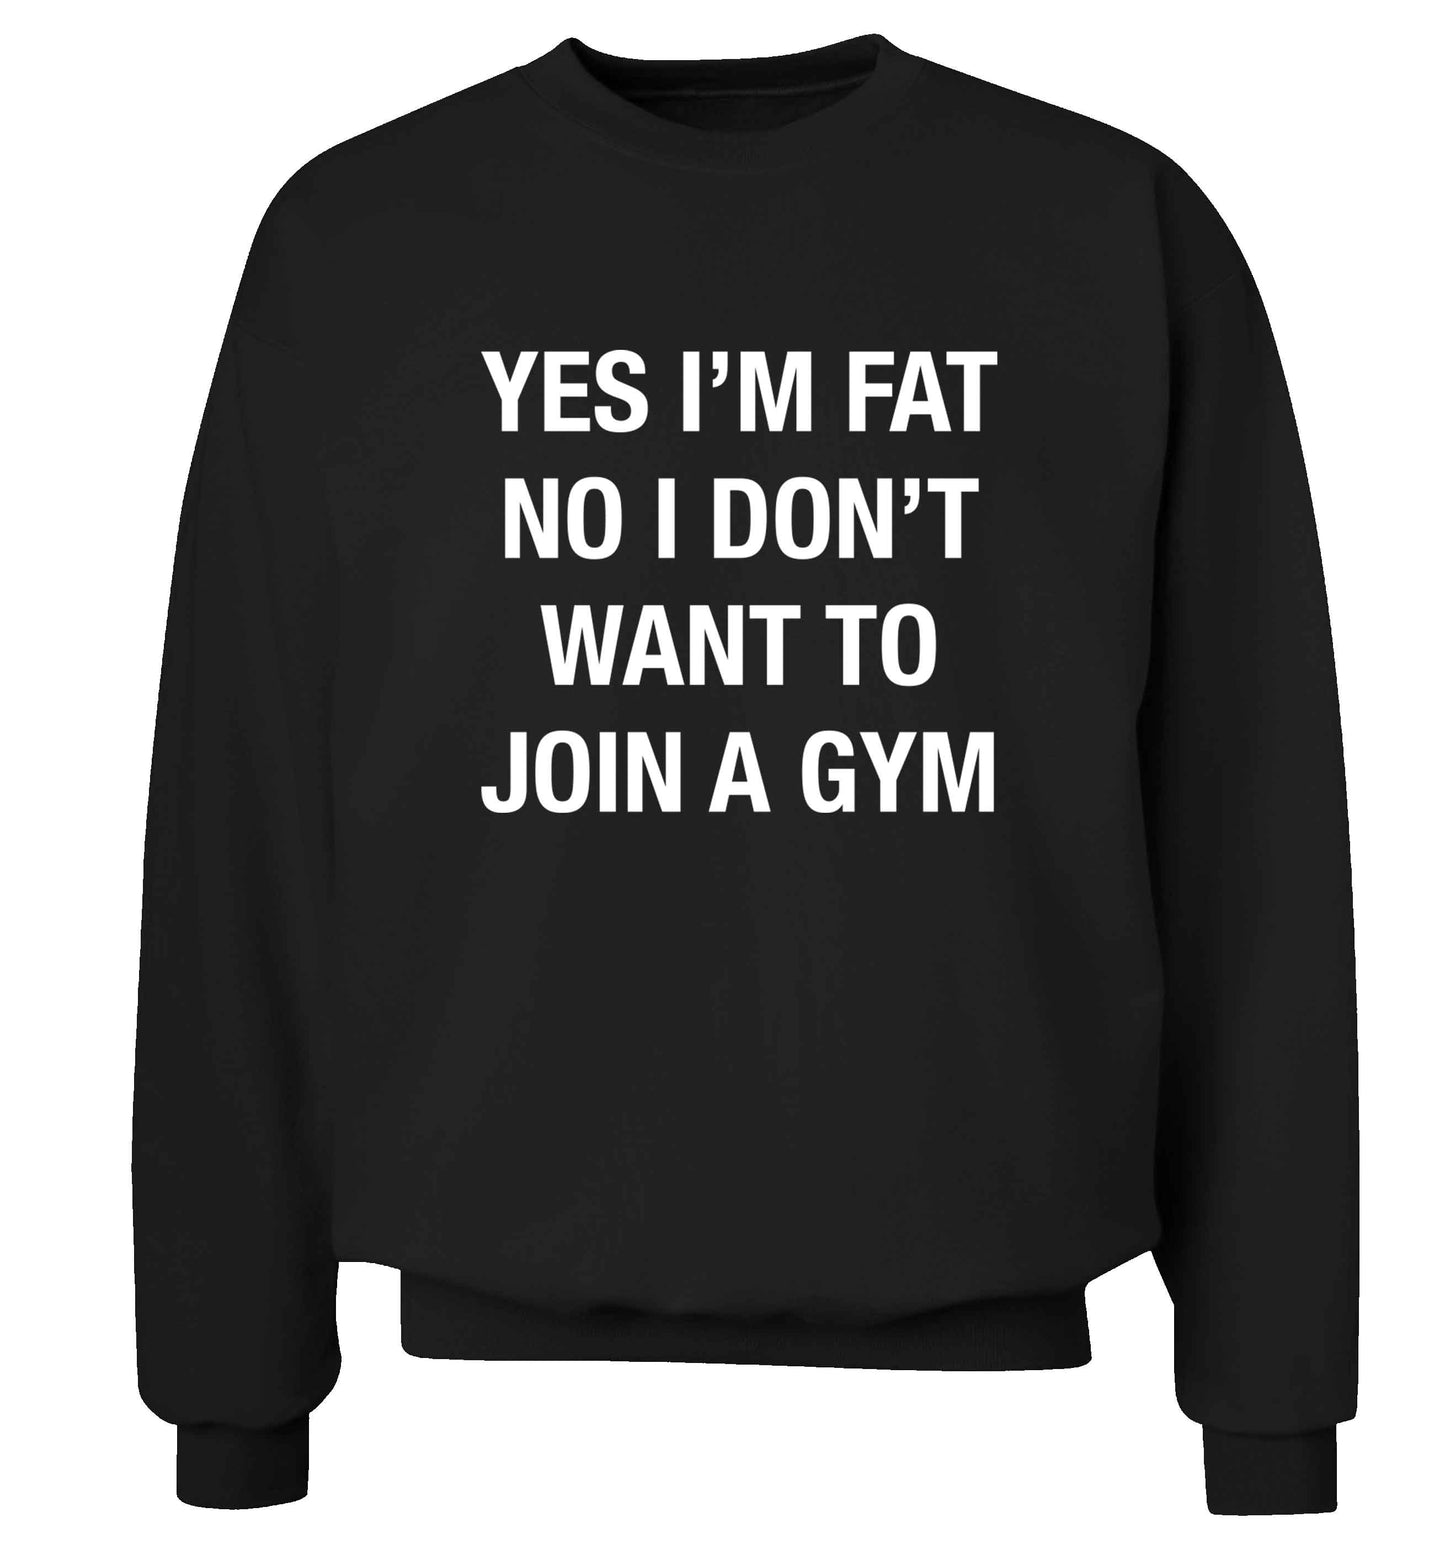 Yes I'm fat, no I don't want to go to the gym adult's unisex black sweater 2XL